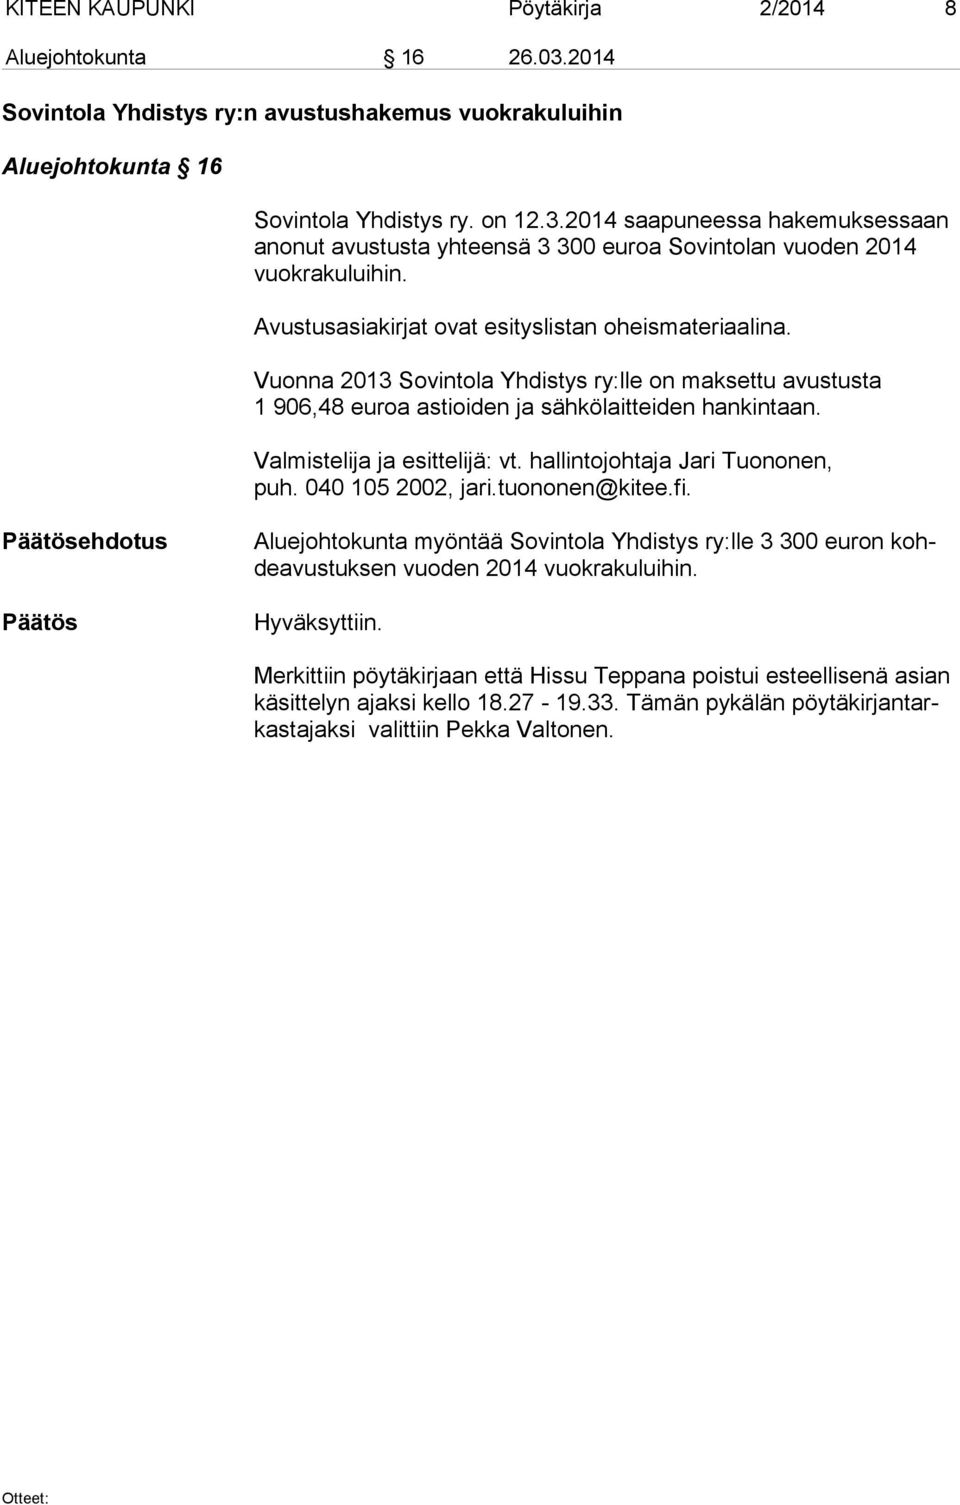 Valmistelija ja esittelijä: vt. hallintojohtaja Jari Tuononen, puh. 040 105 2002, jari.tuononen@kitee.fi.